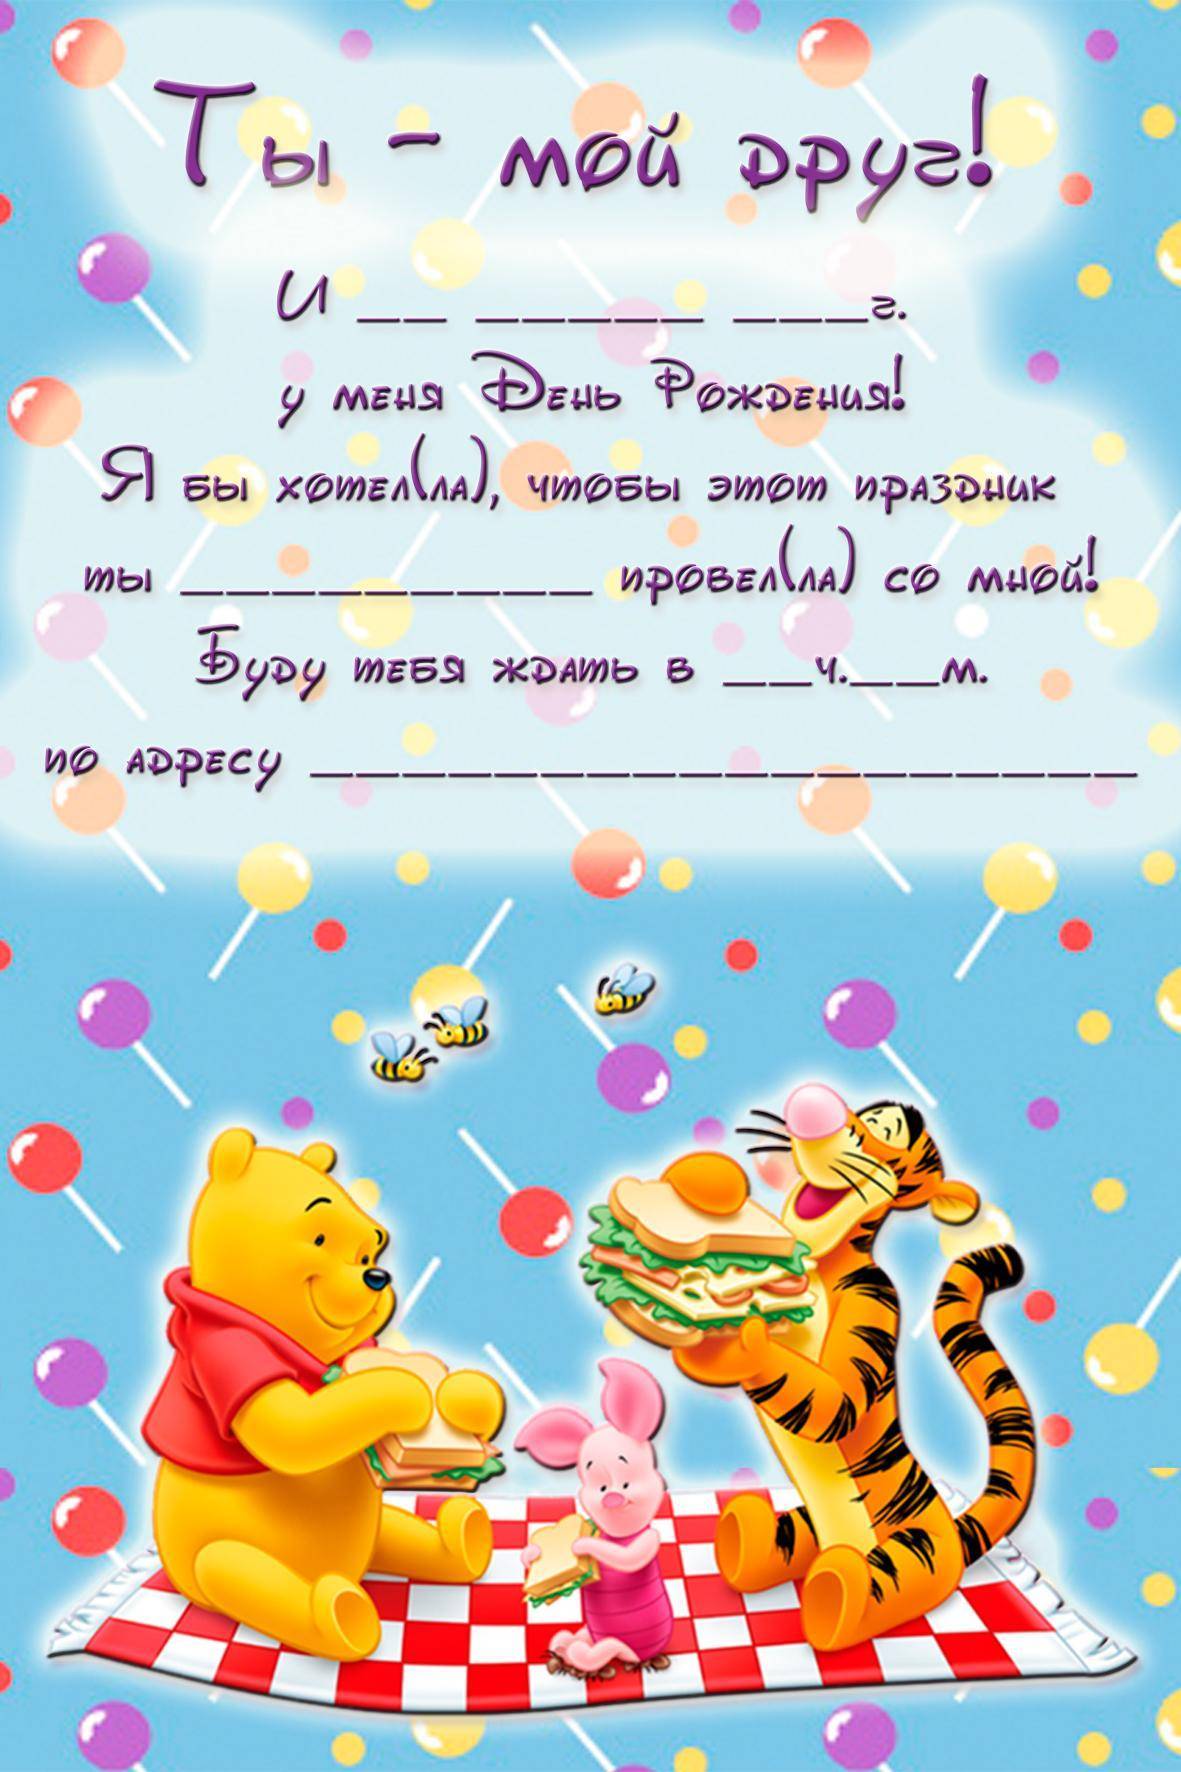 Приглашение на детский день рождения